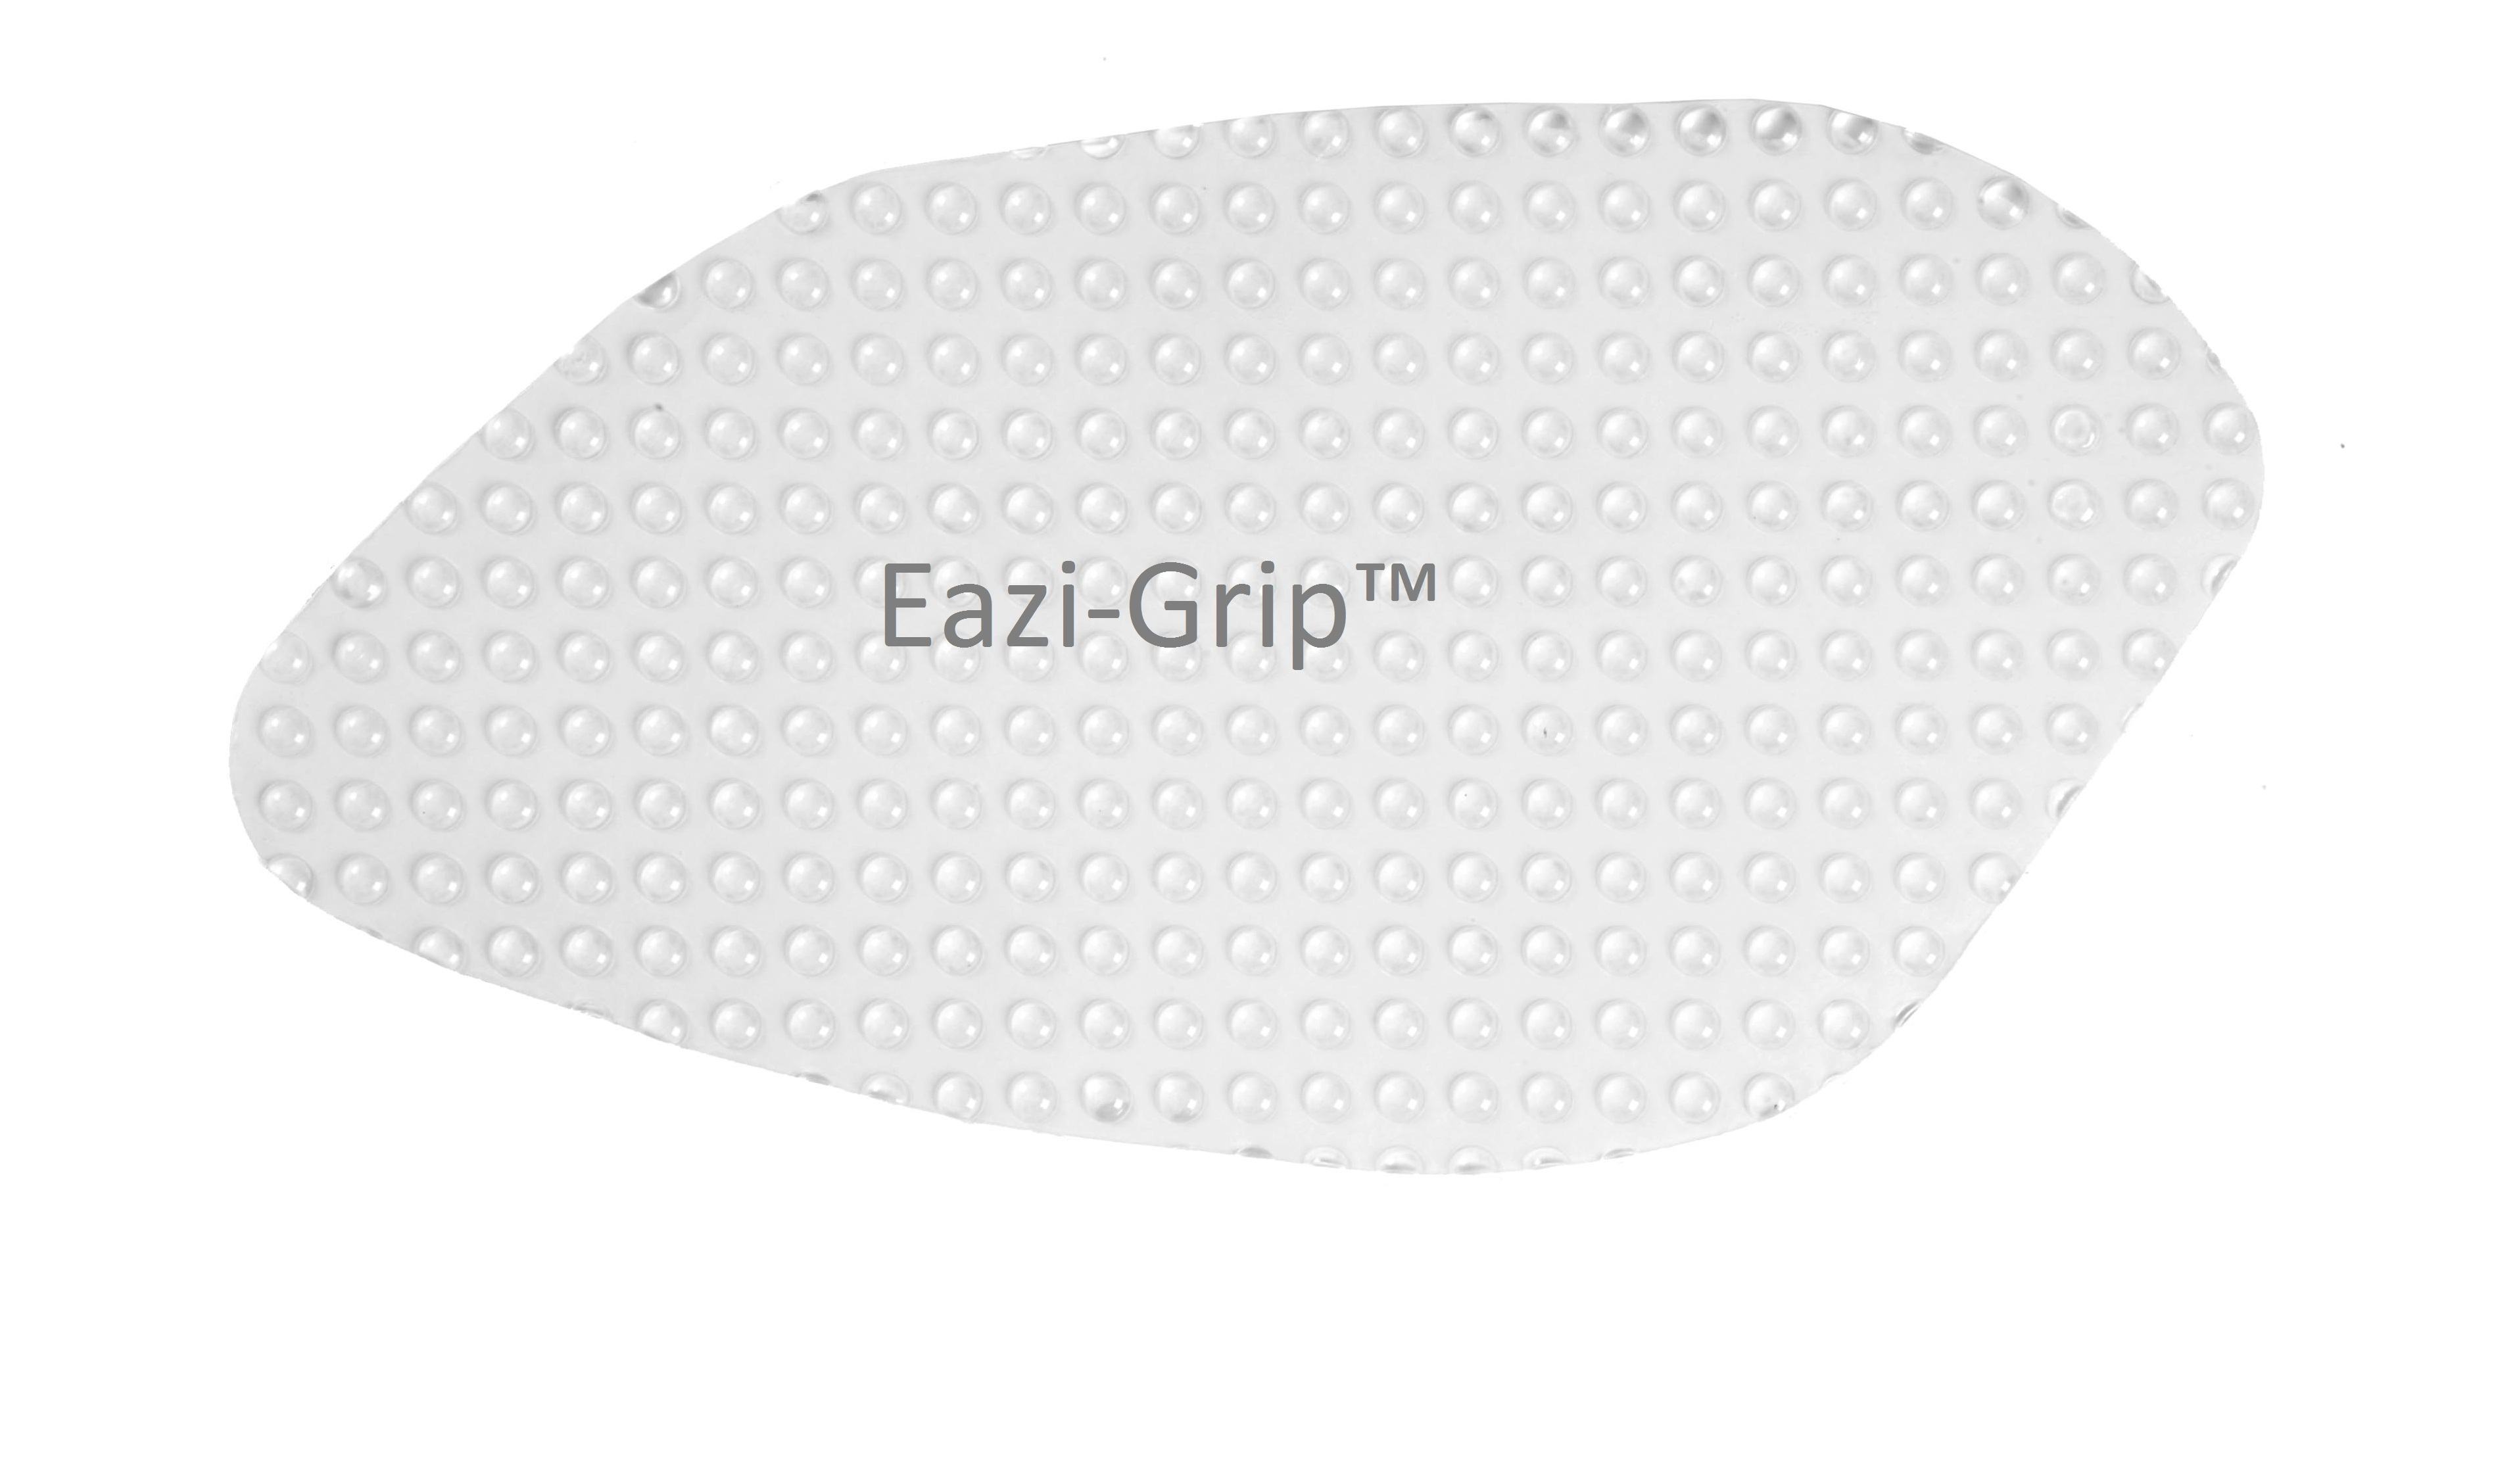 Eazi-Grip Evo Tank Grips